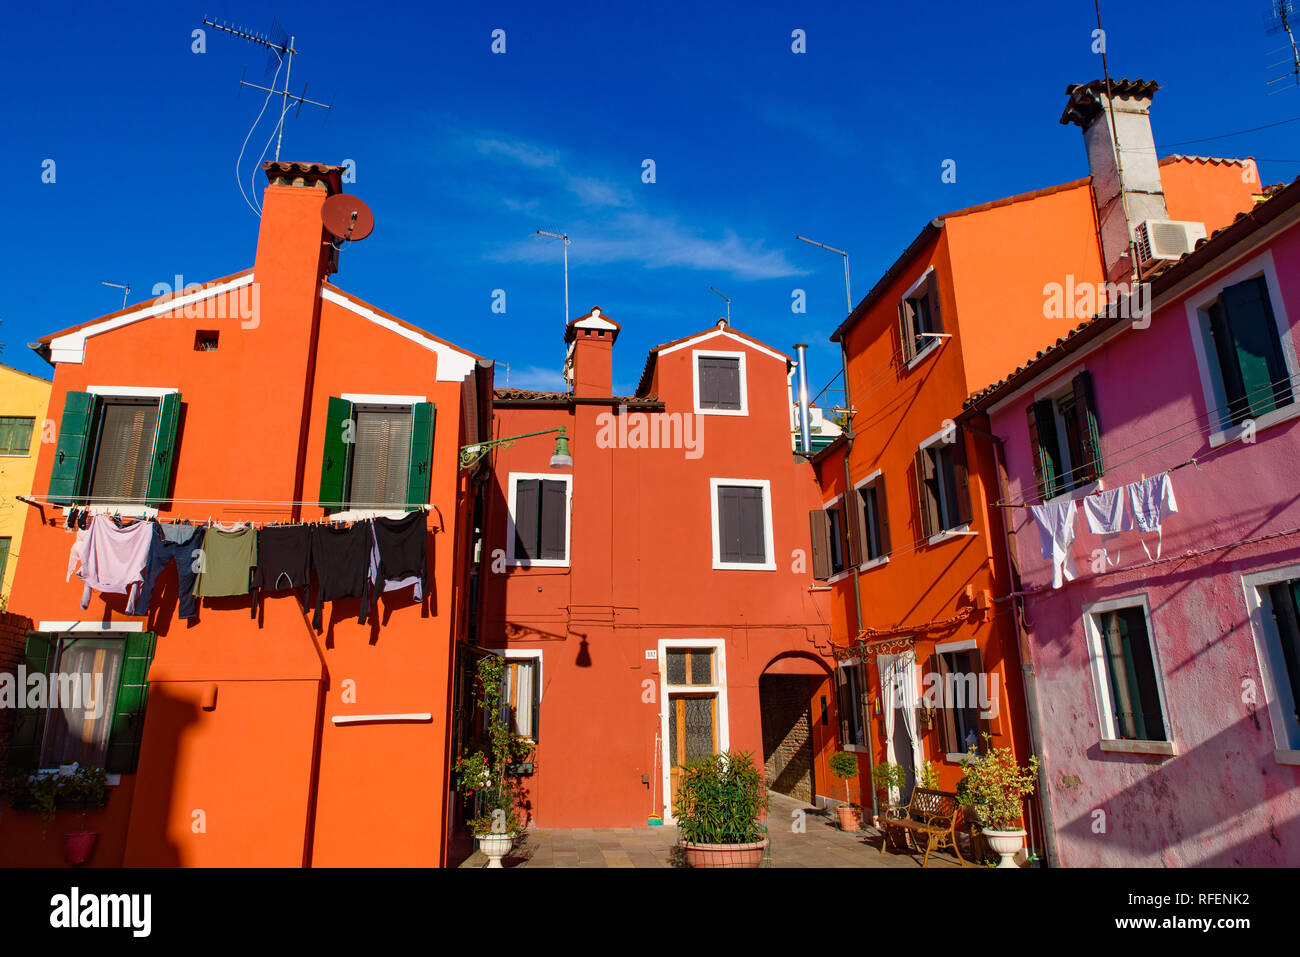 L'île de Burano, célèbre pour ses maisons de pêcheurs colorées, à Venise, Italie Banque D'Images